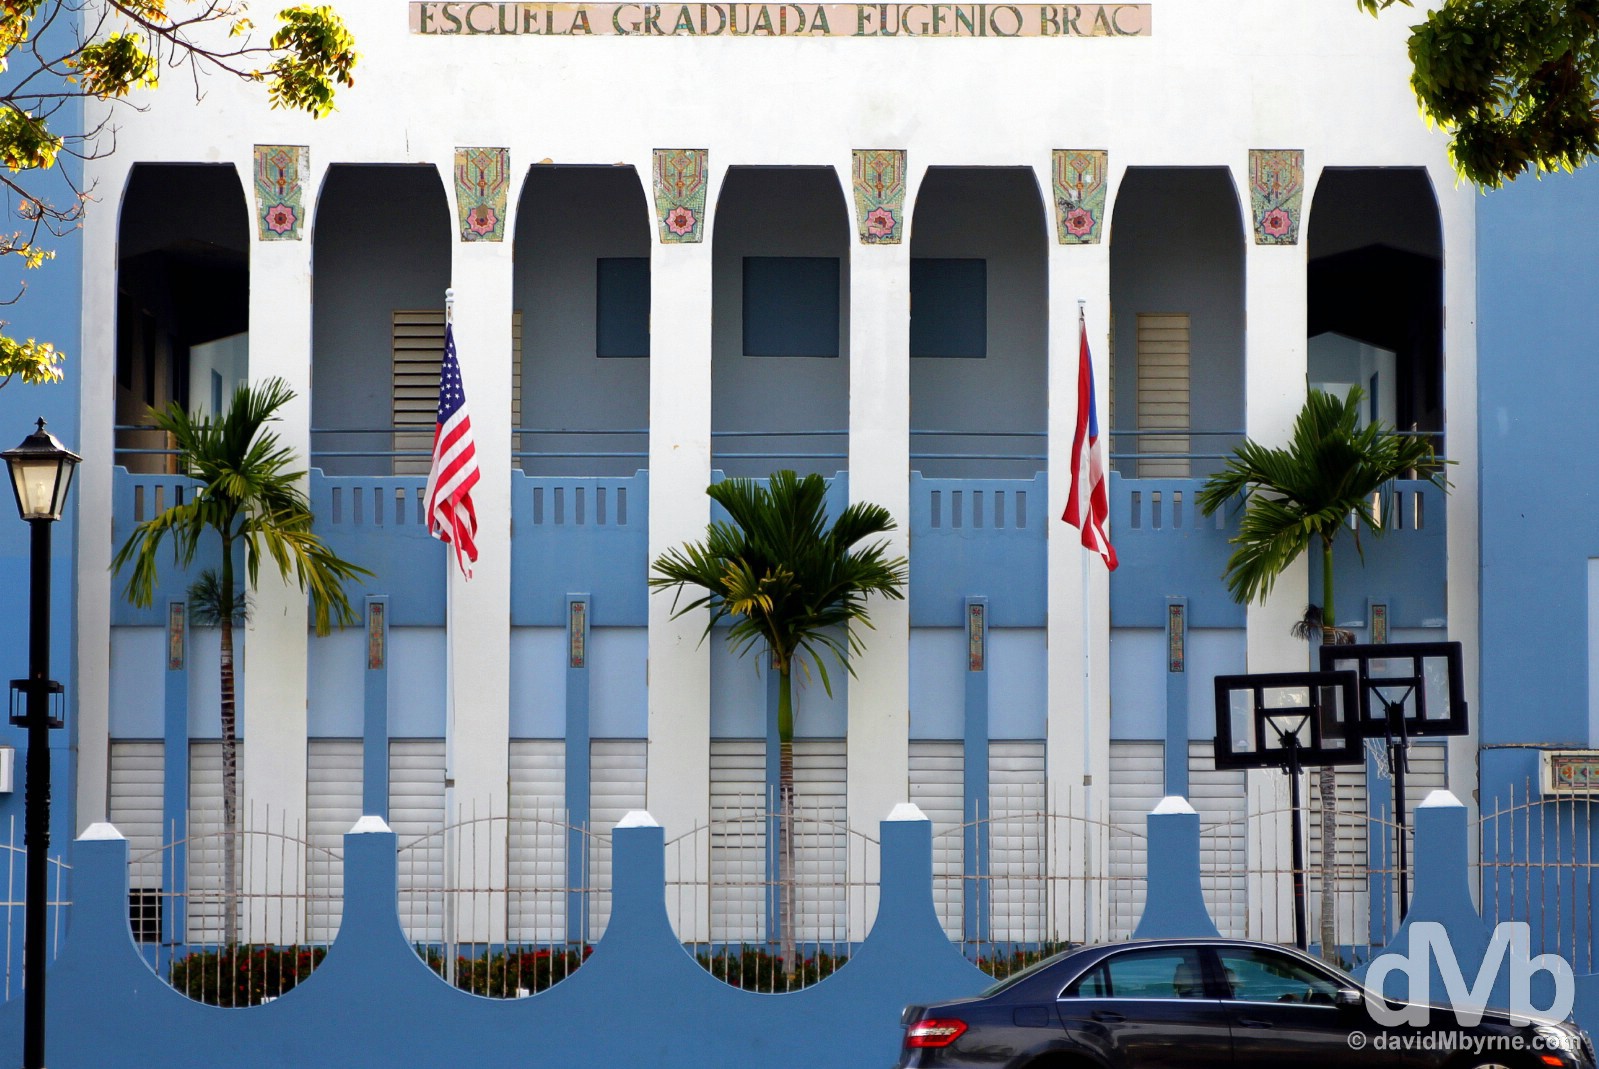 Escuela Graduada Eugenio Brac off Plaza de Fajardo in Fajardo, eastern Puerto Rico, Greater Antilles. June 5, 2015.